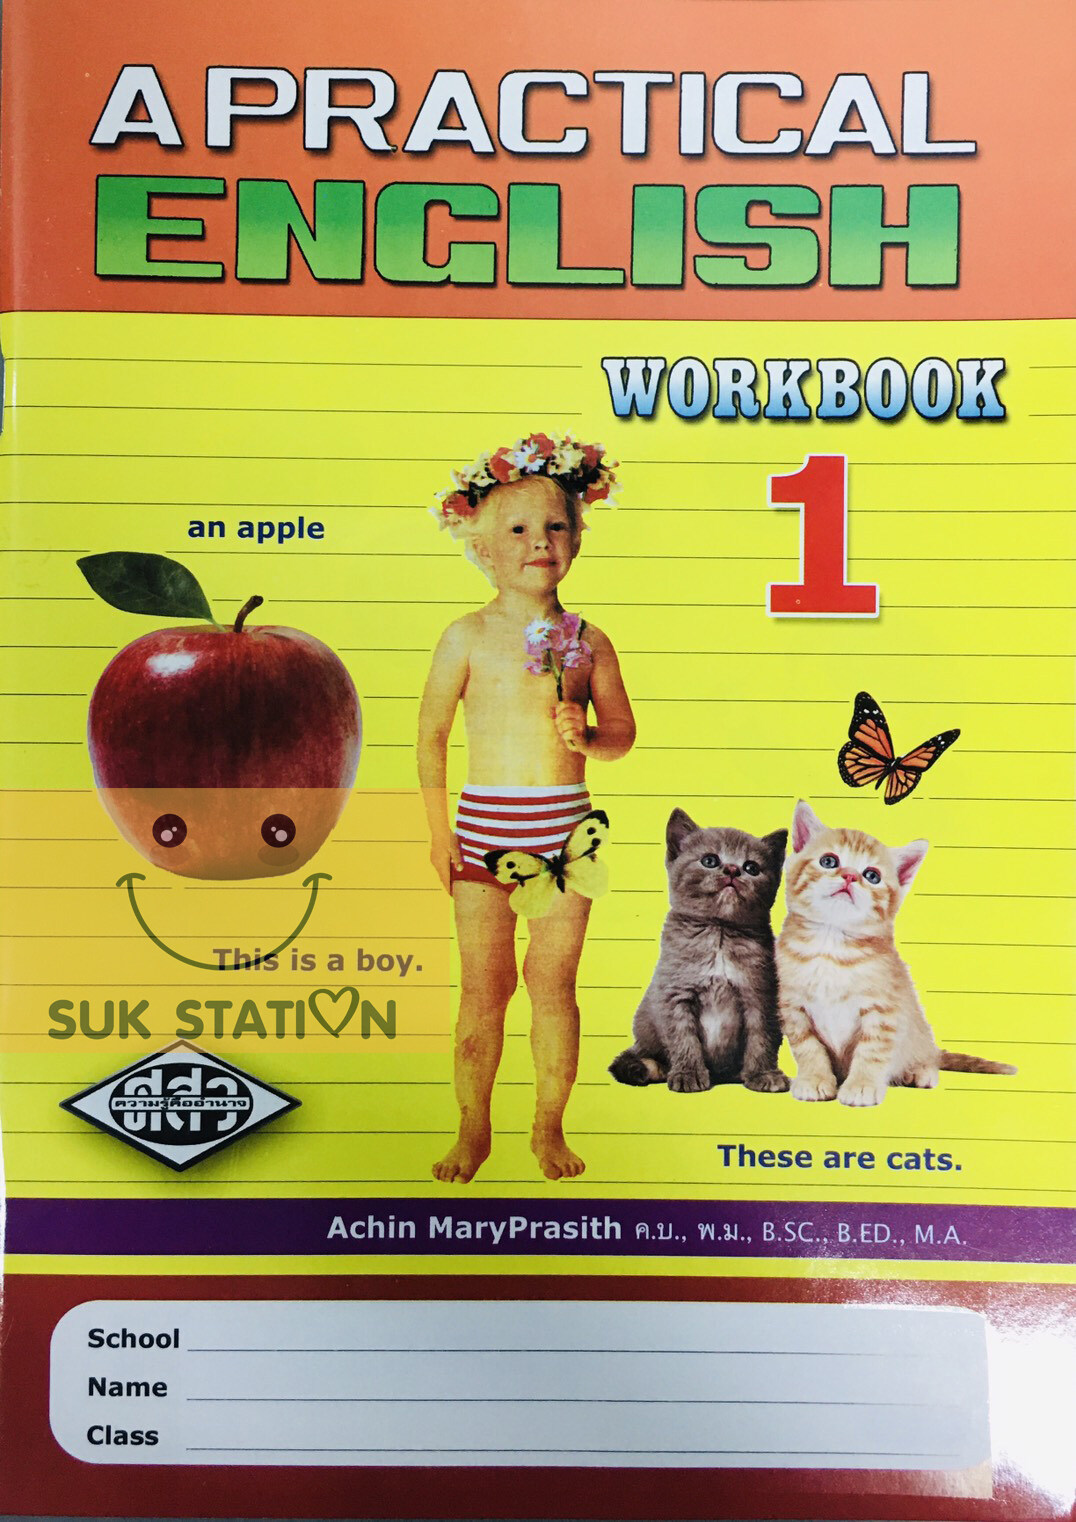 หนังสือ A PRACTICAL ENGLISH WORKBOOK 1 แบบเรียนภาษาอังกฤษ ป.1